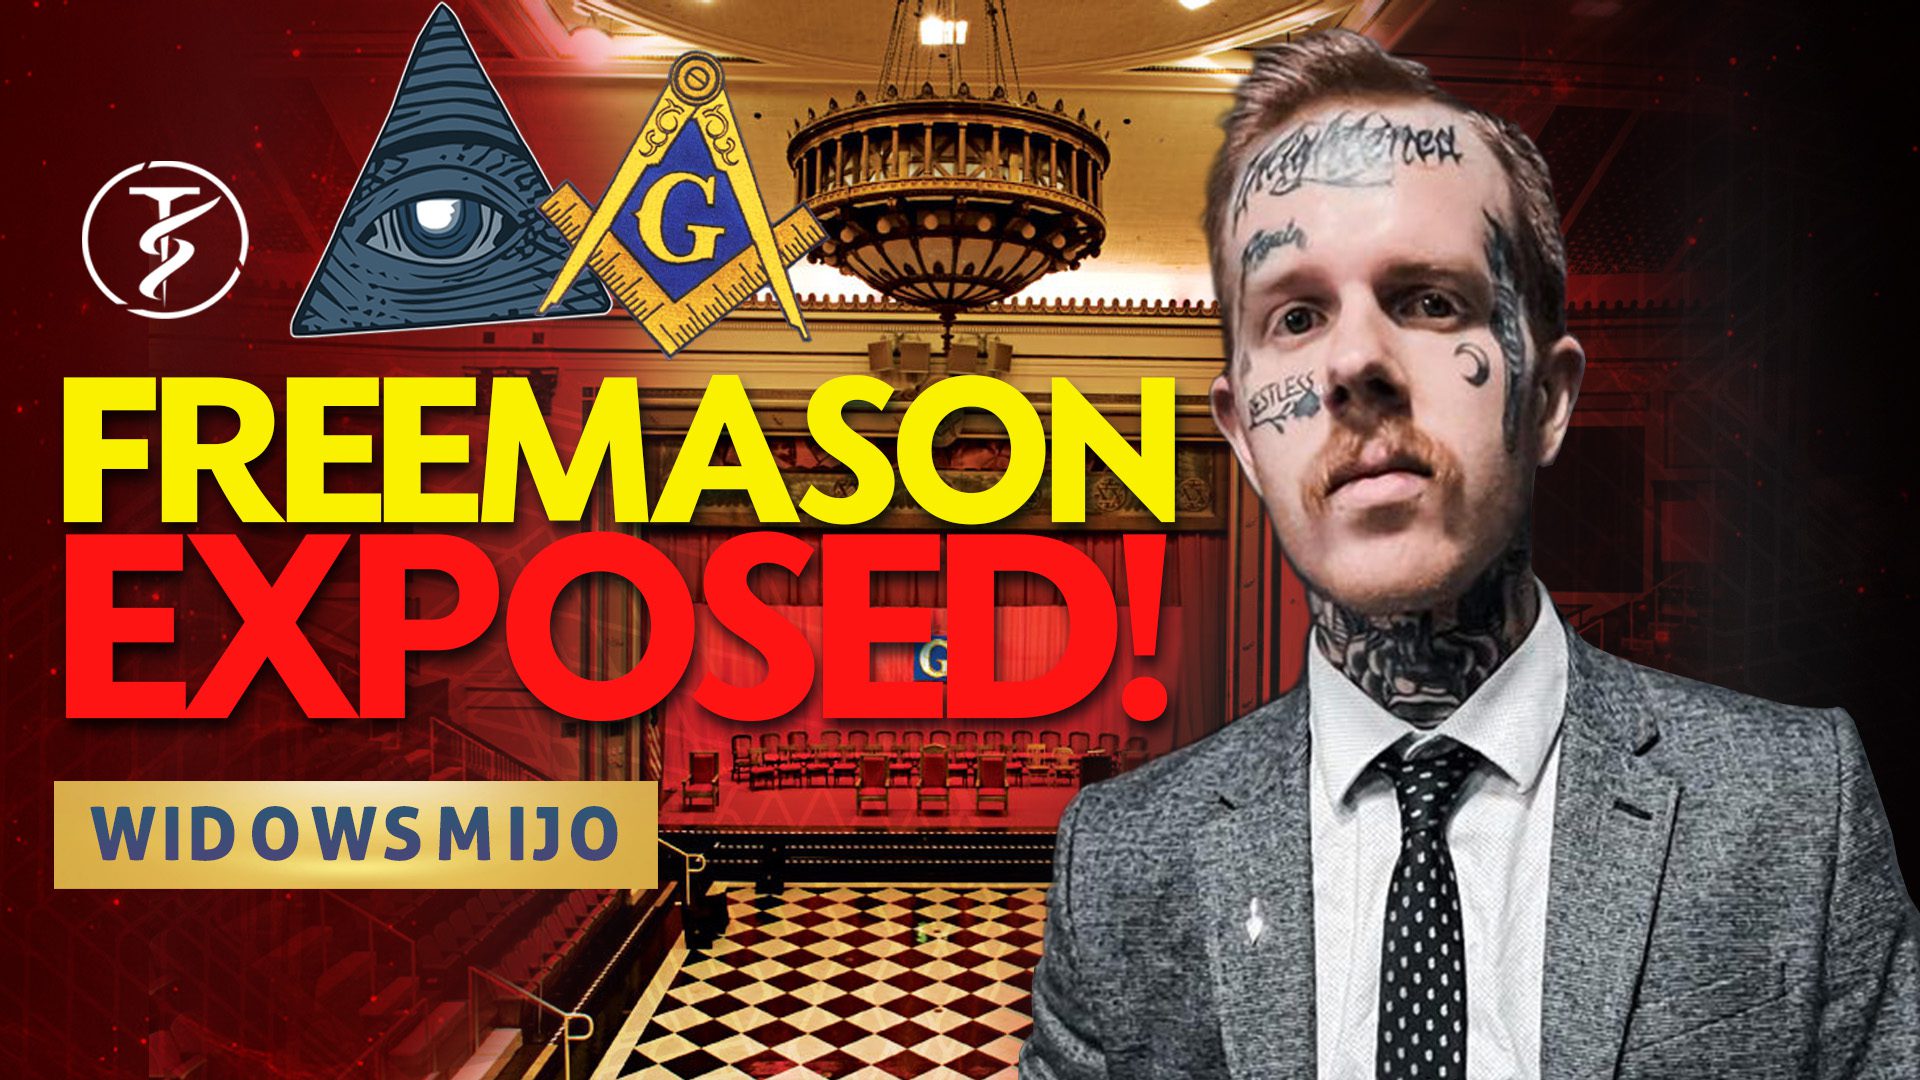 FREEMASONRY EXPOSED!!! — A 32 Degree Freemason SHOCKS THE WORLD And Tells ALL!!! — WidowsMijo